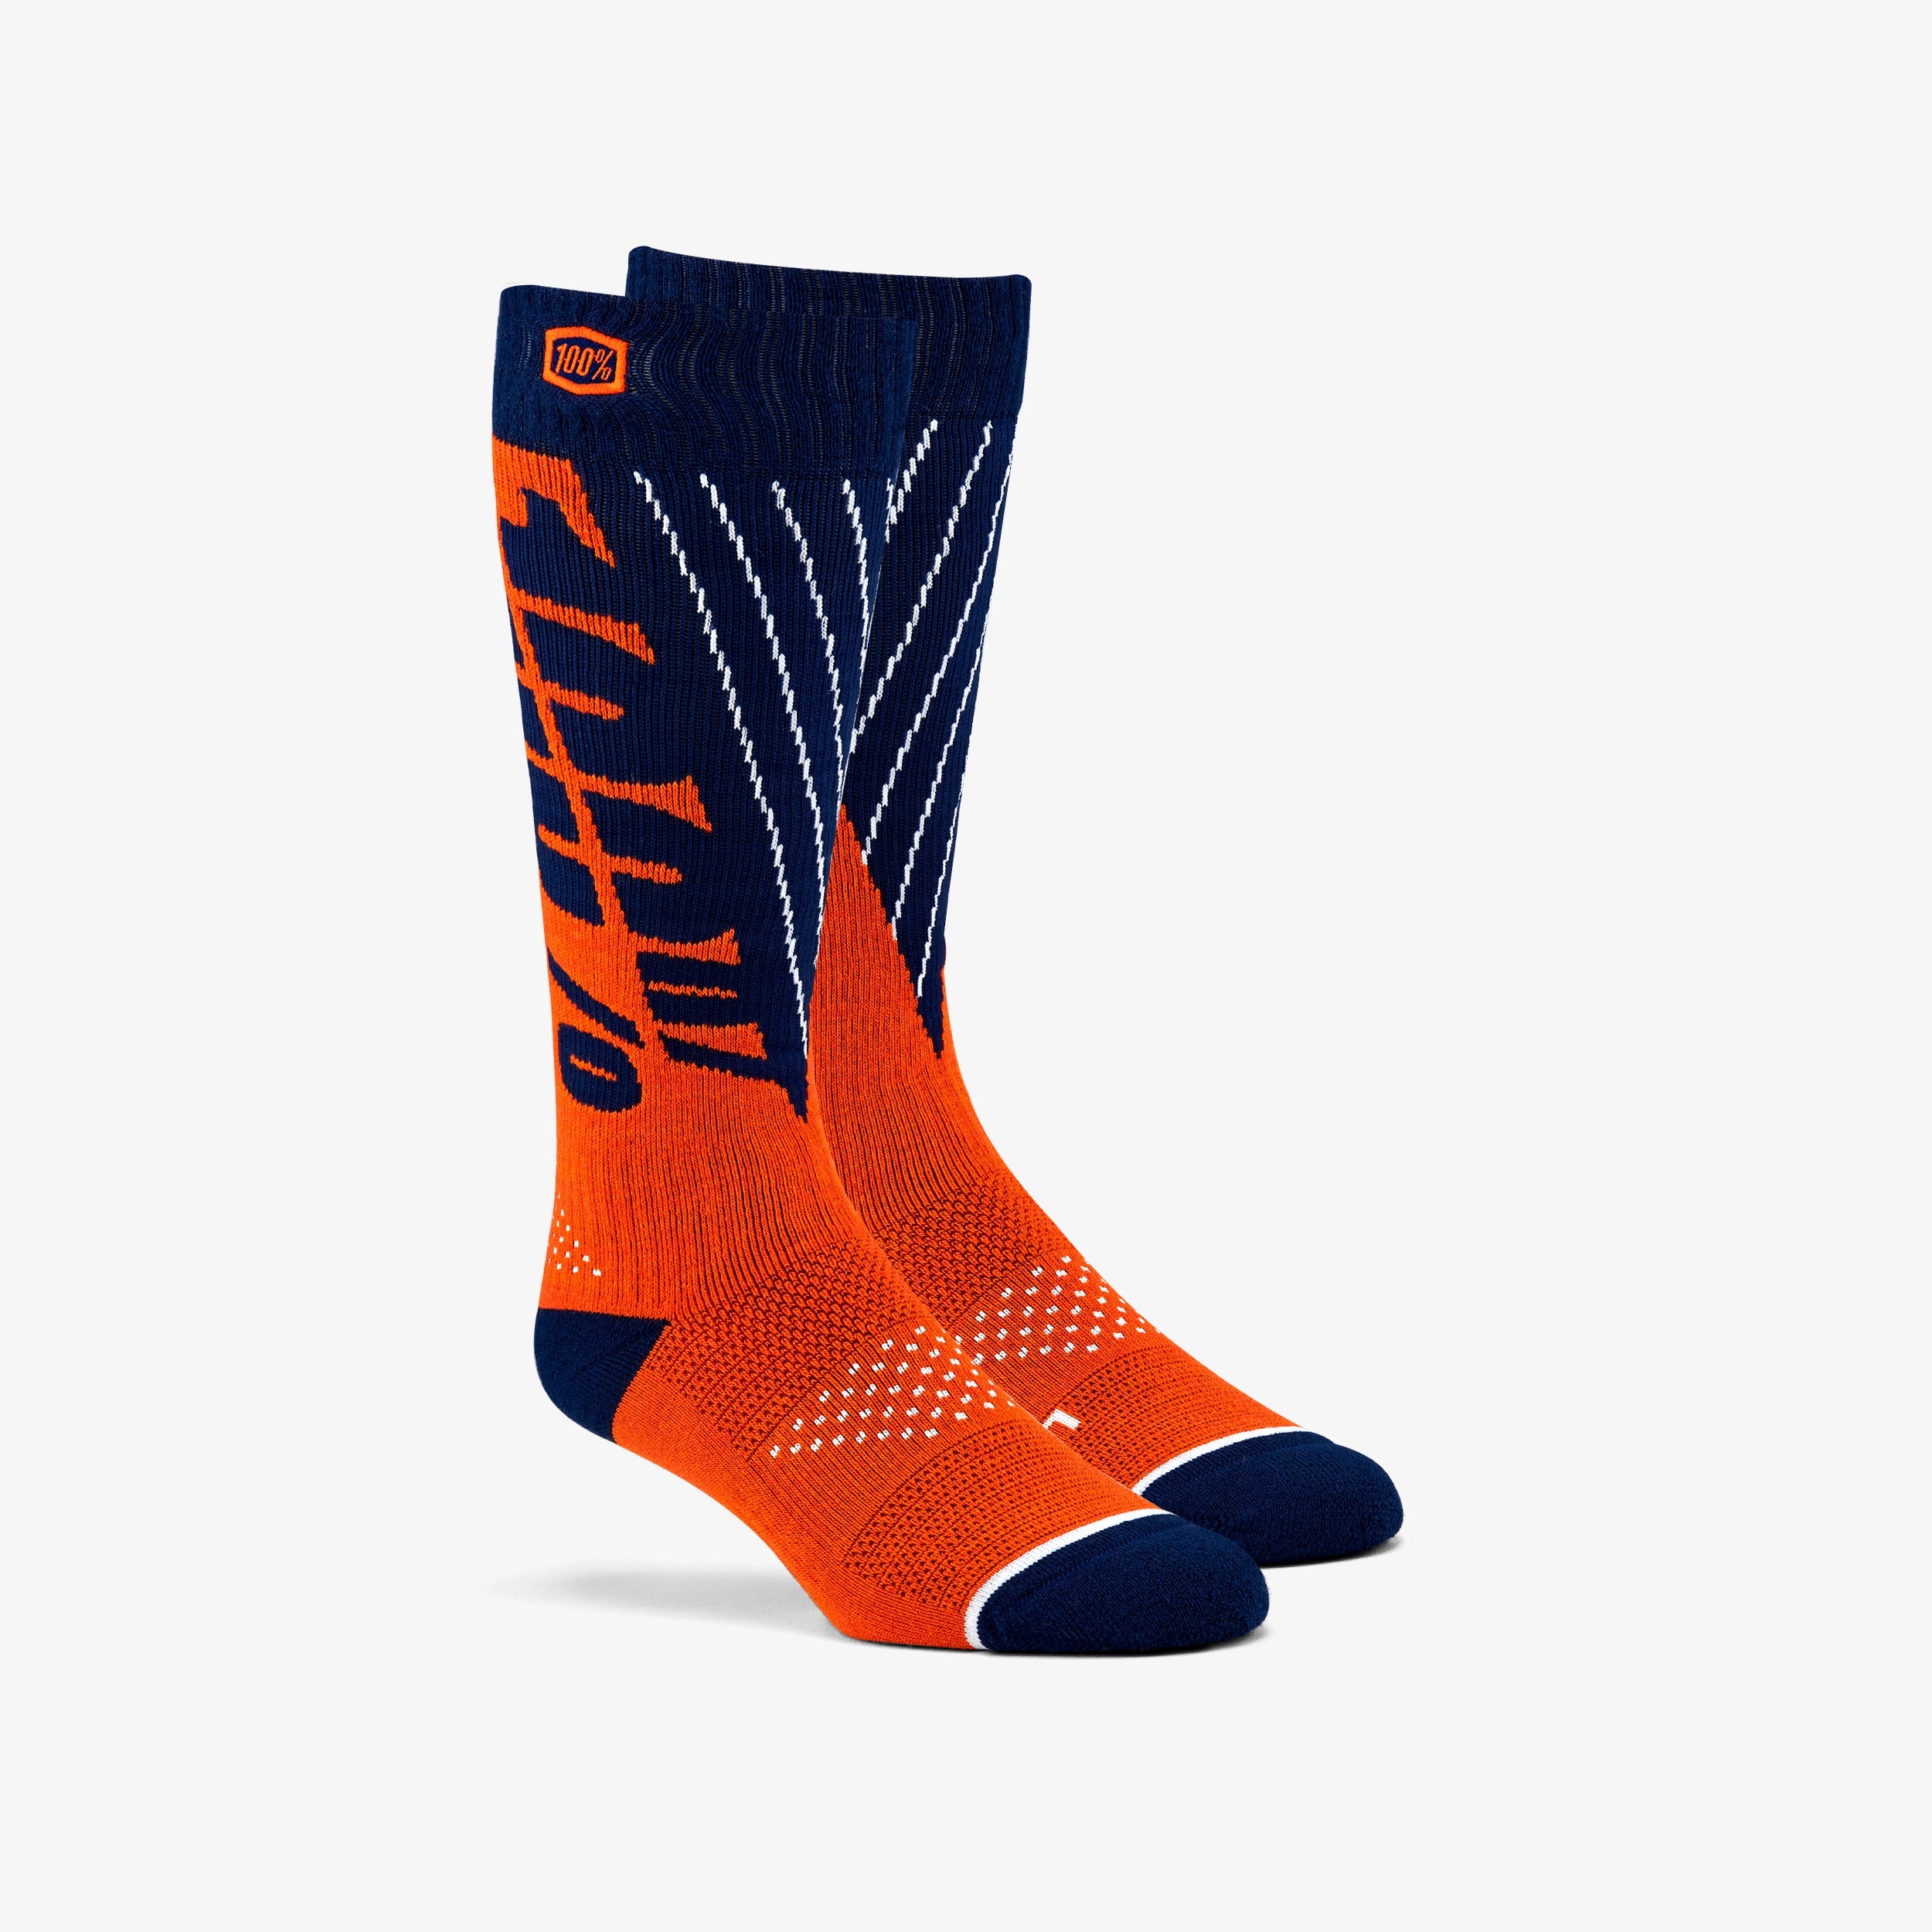 TORQUE Comfort Moto Socks Navy/Orange